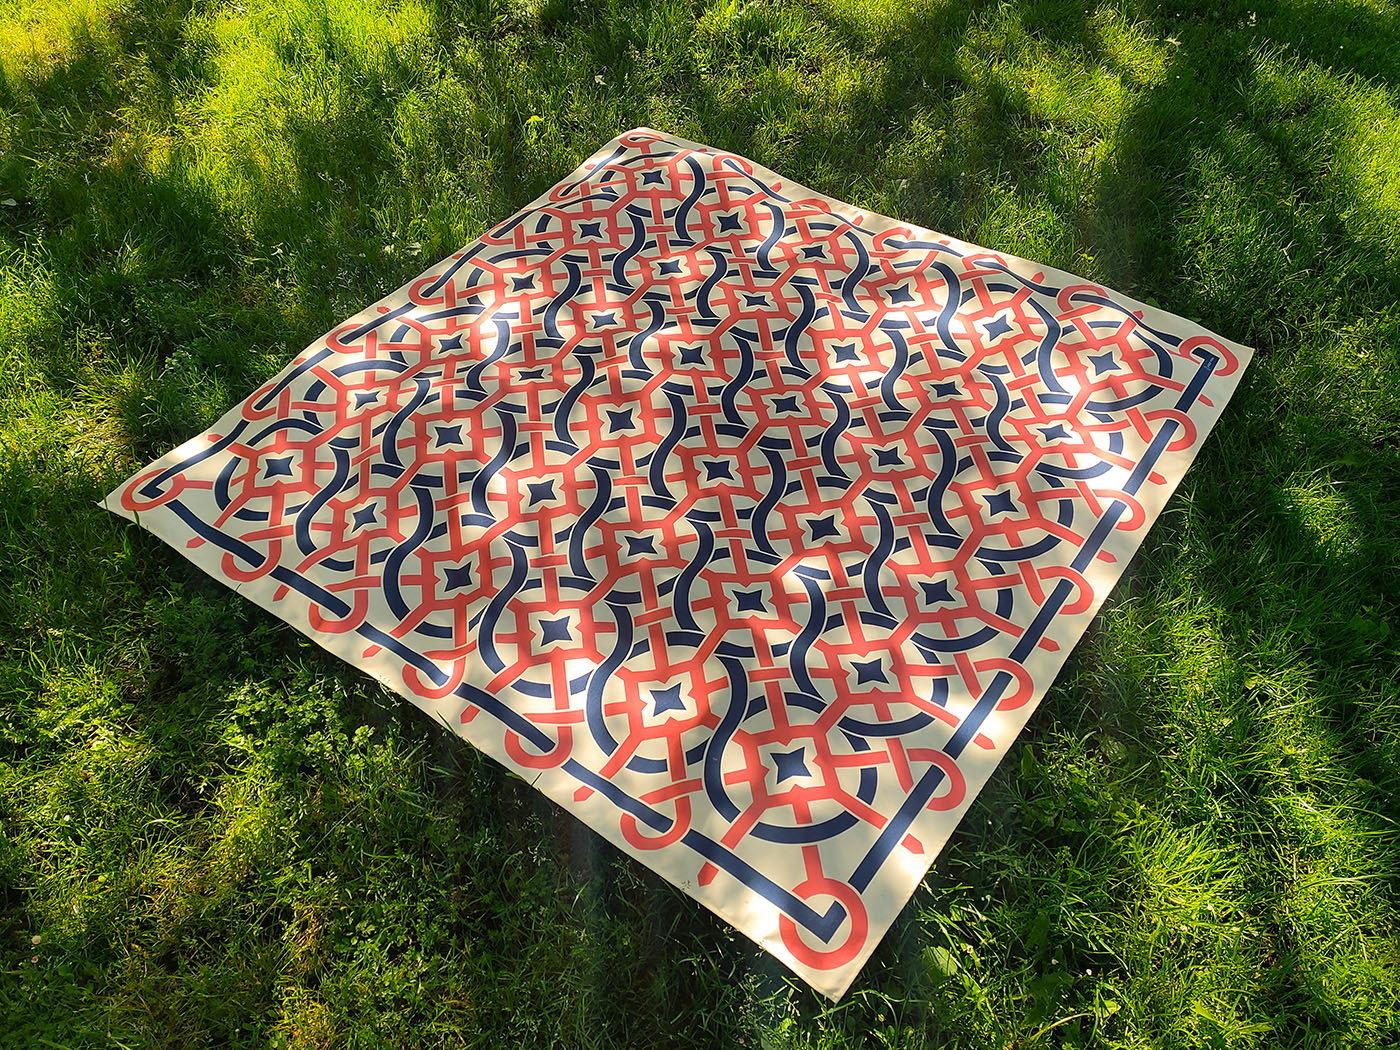 blanket motif Park patro pattern picnic public textile tiles